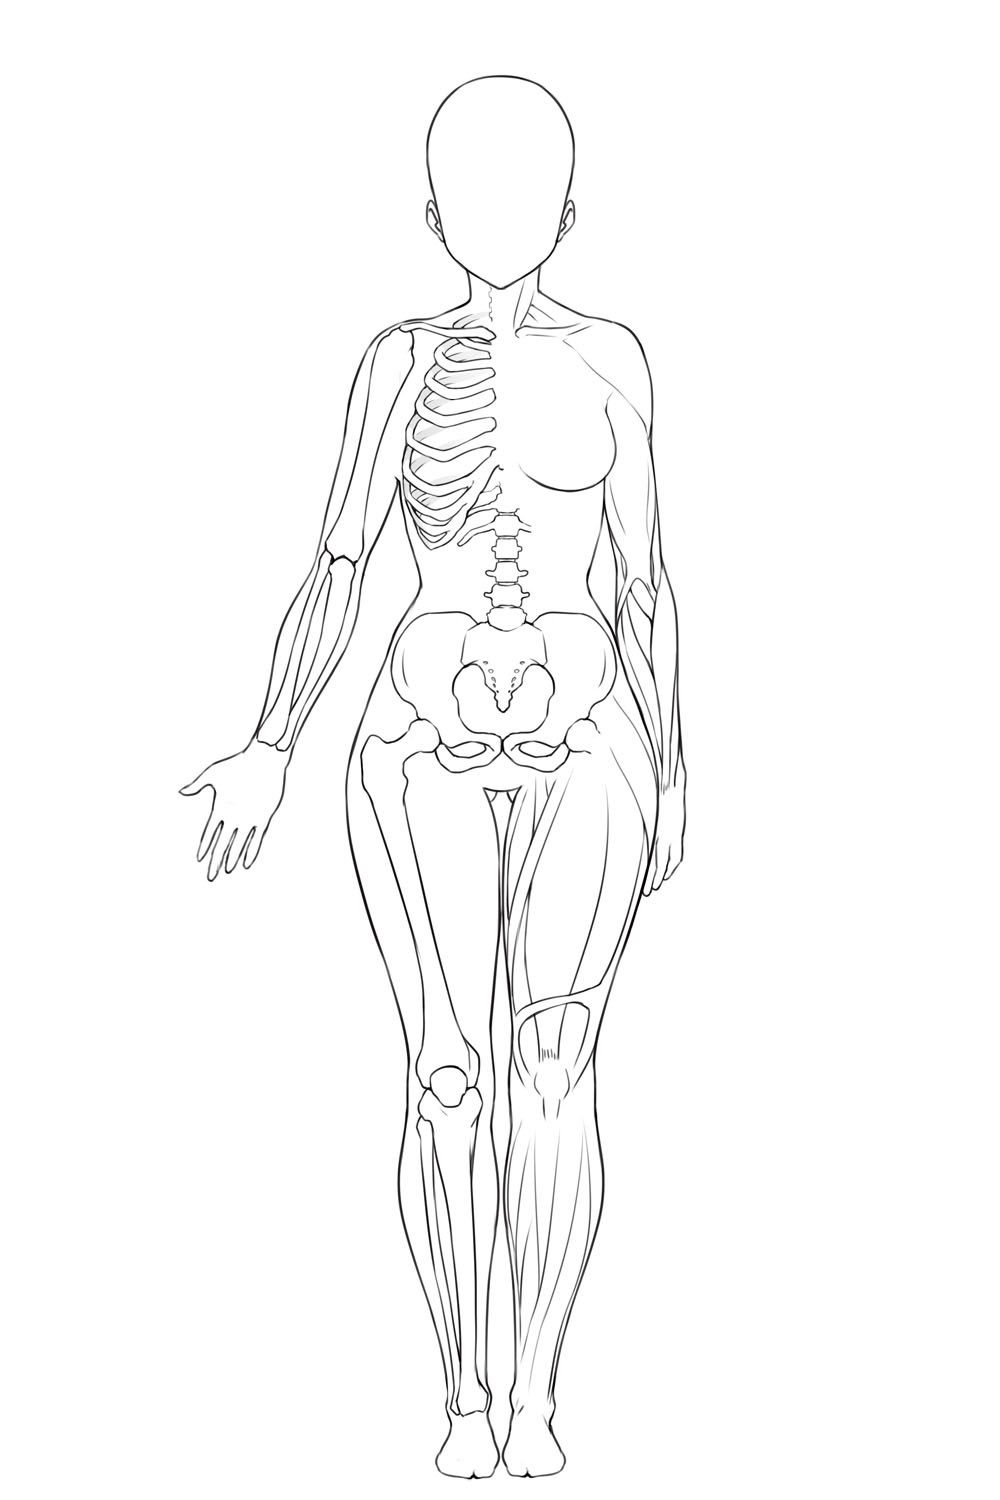 性別による骨格と筋肉の違いを理解しよう ちょっぴりhなおんなのこの描き方 第1回 Pictures